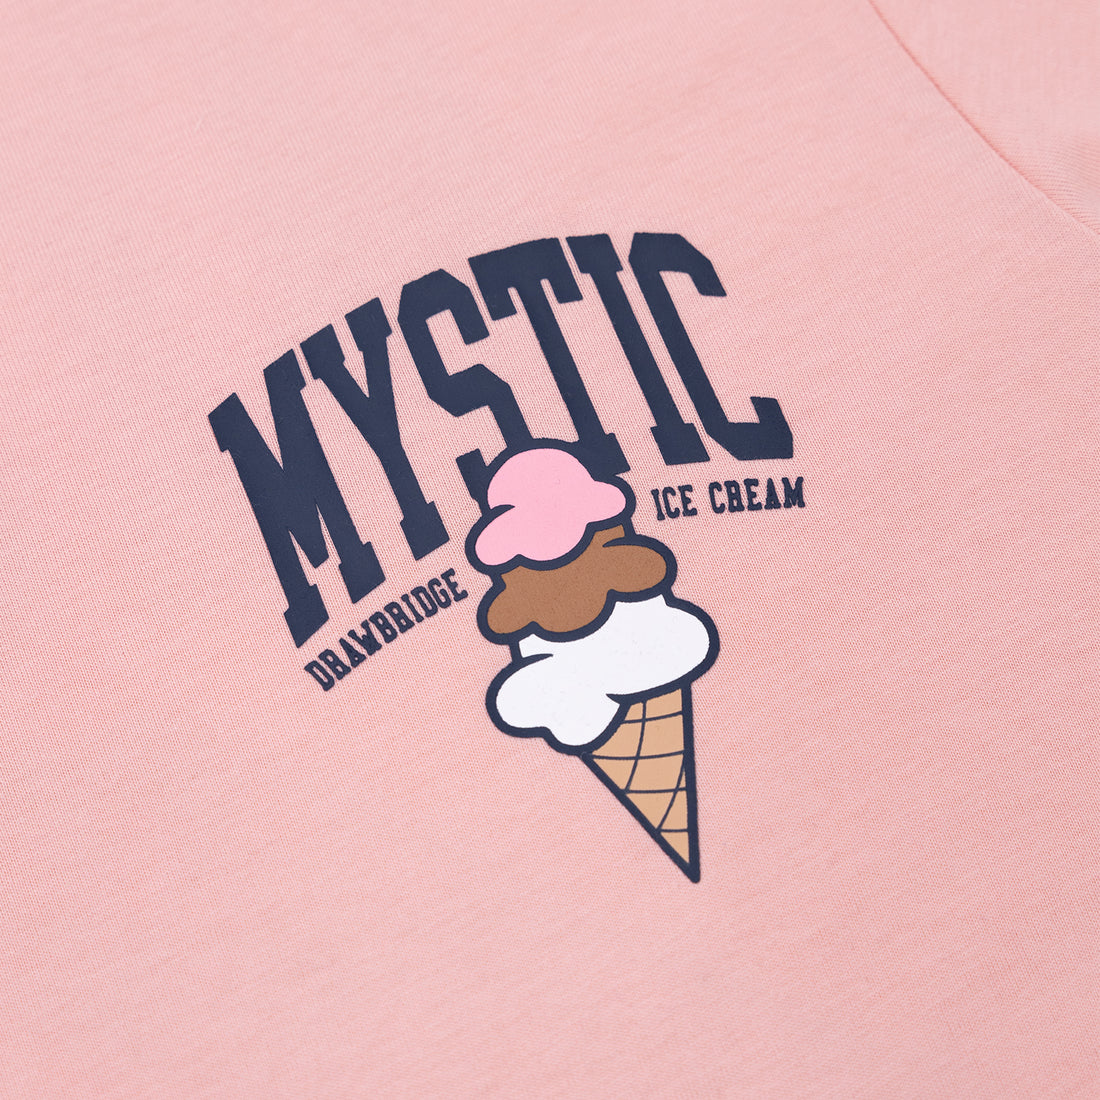 Just Mystic x Mystic Drawbridge Ice Cream in Blush